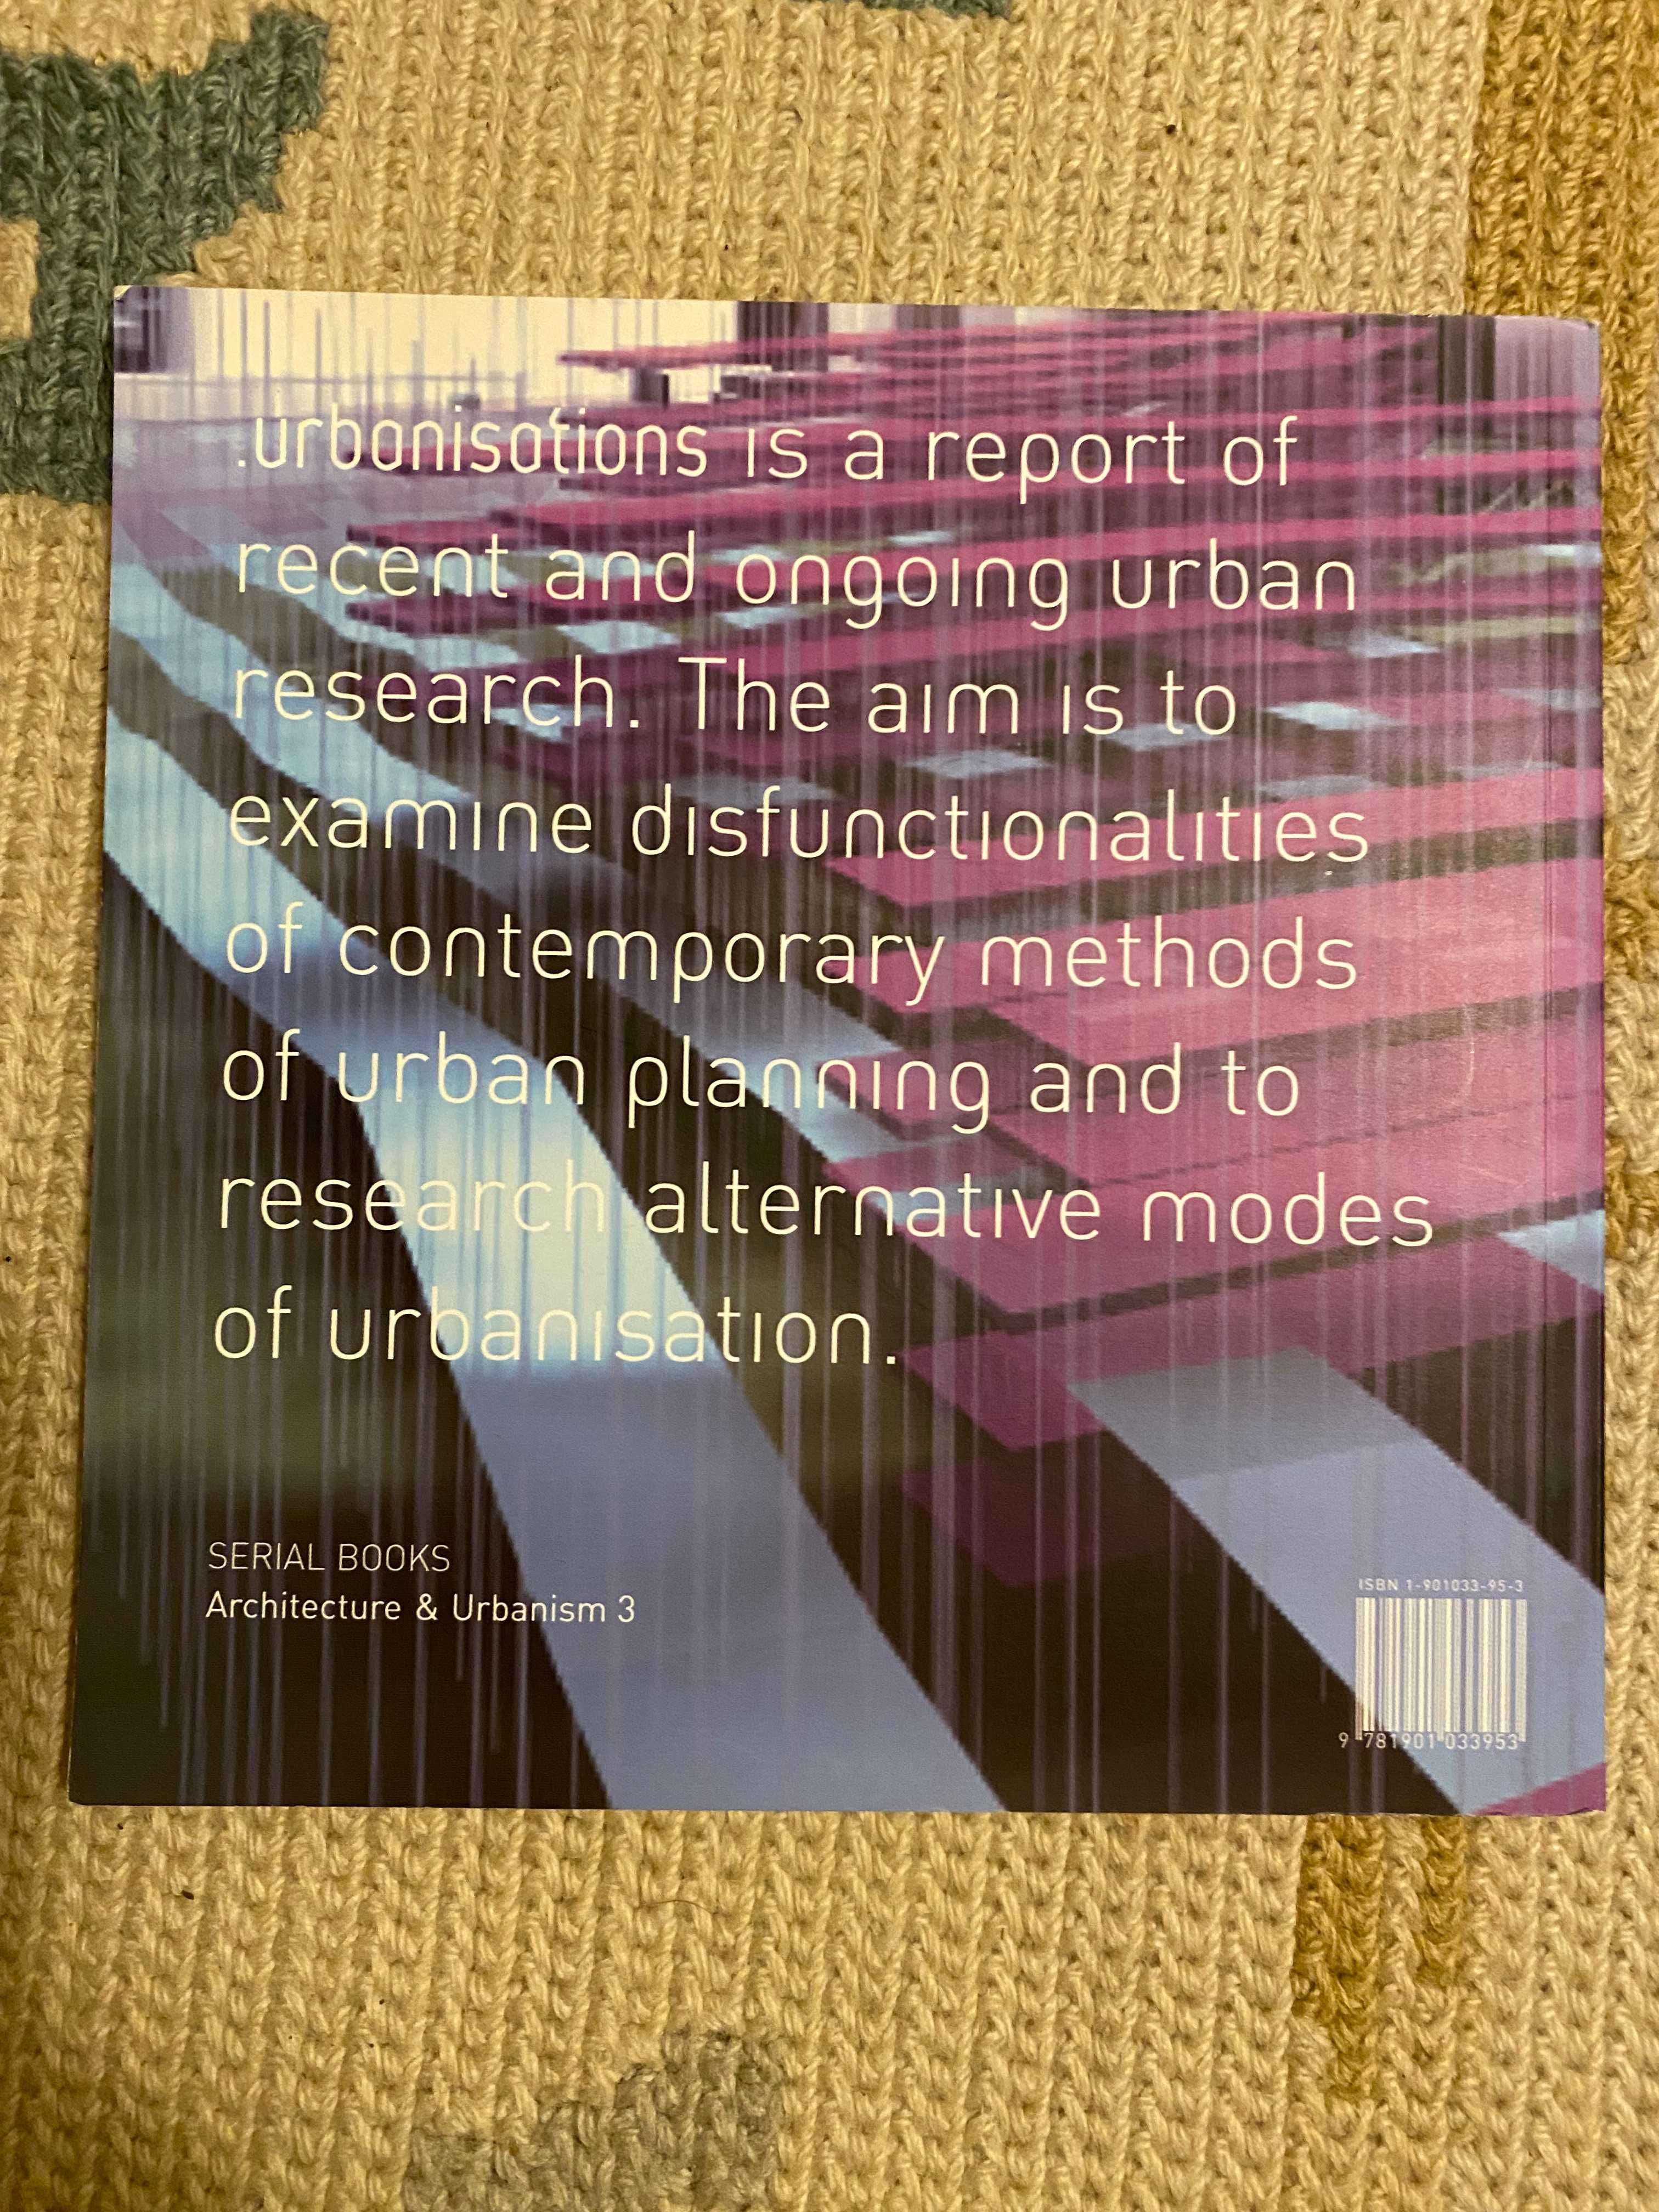 Livro de arquitetura e Urbanismo - Urbanisations O.C.E.A.N UK